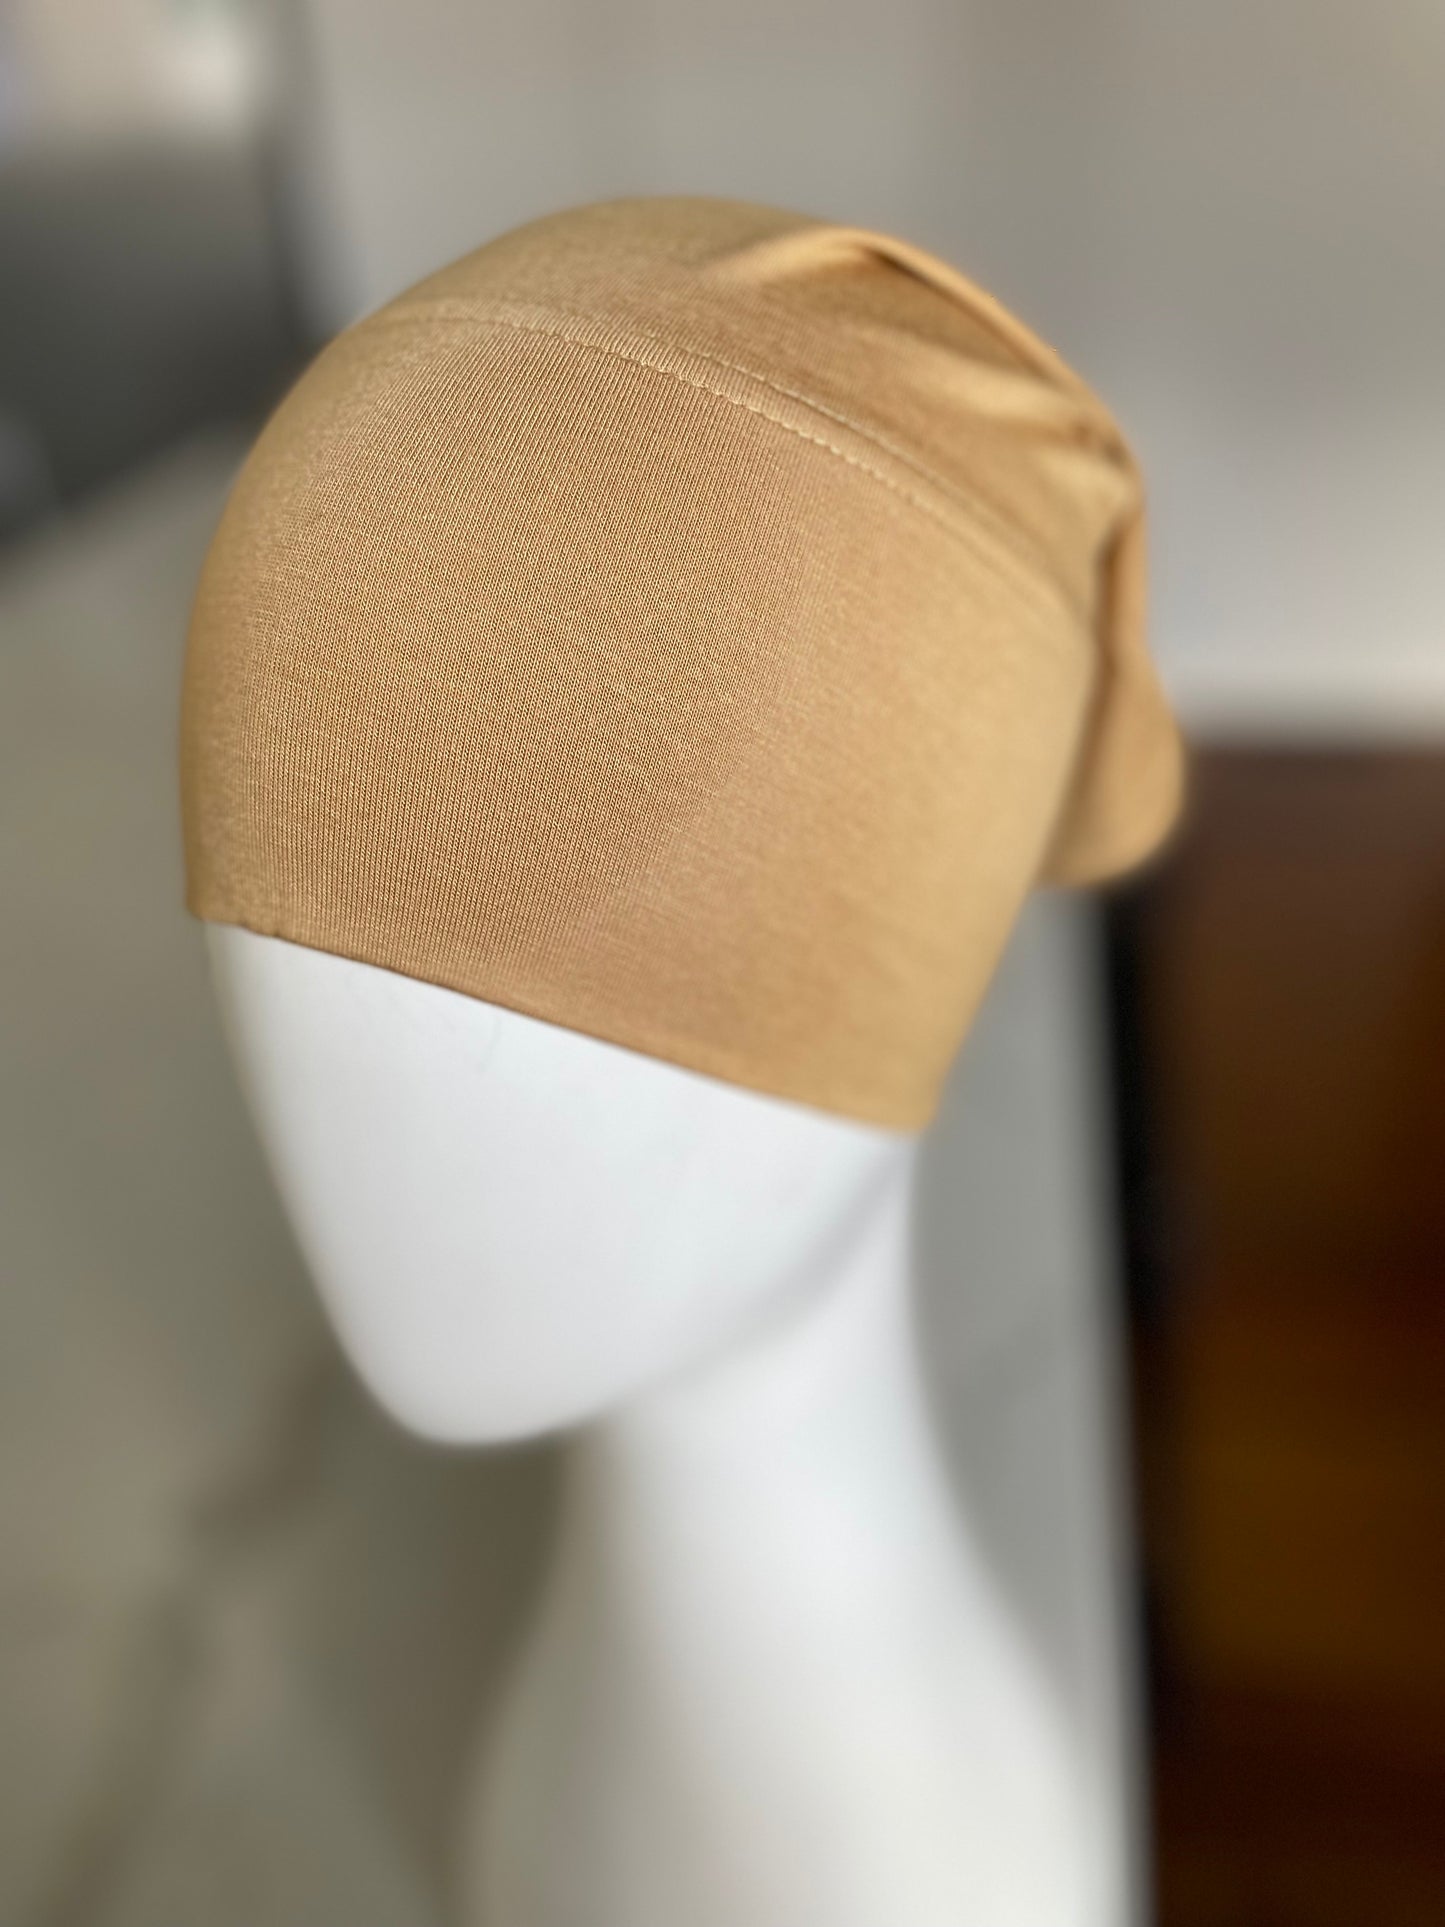 Mustard Headband/Cap